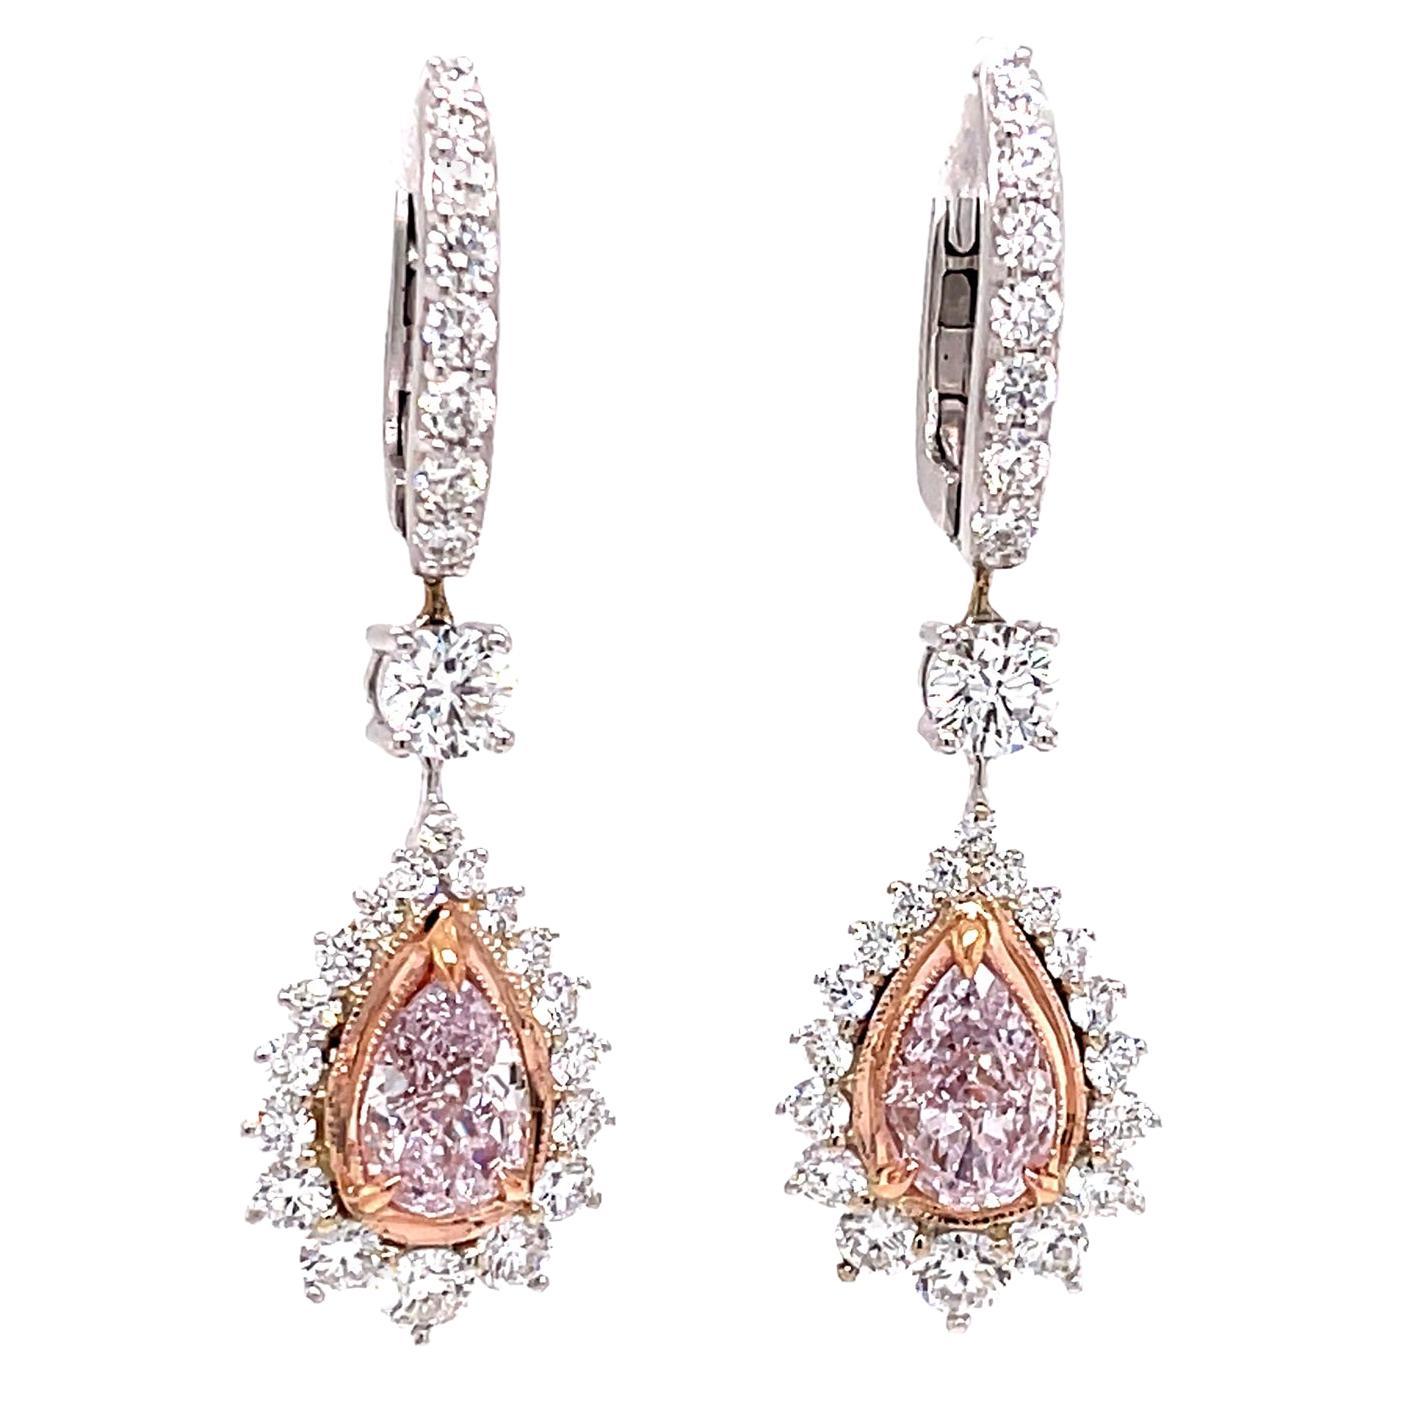 Boucles d'oreilles pendantes en diamant rose clair de 2 carats, certifiées GIA, serties en or blanc 18 carats.